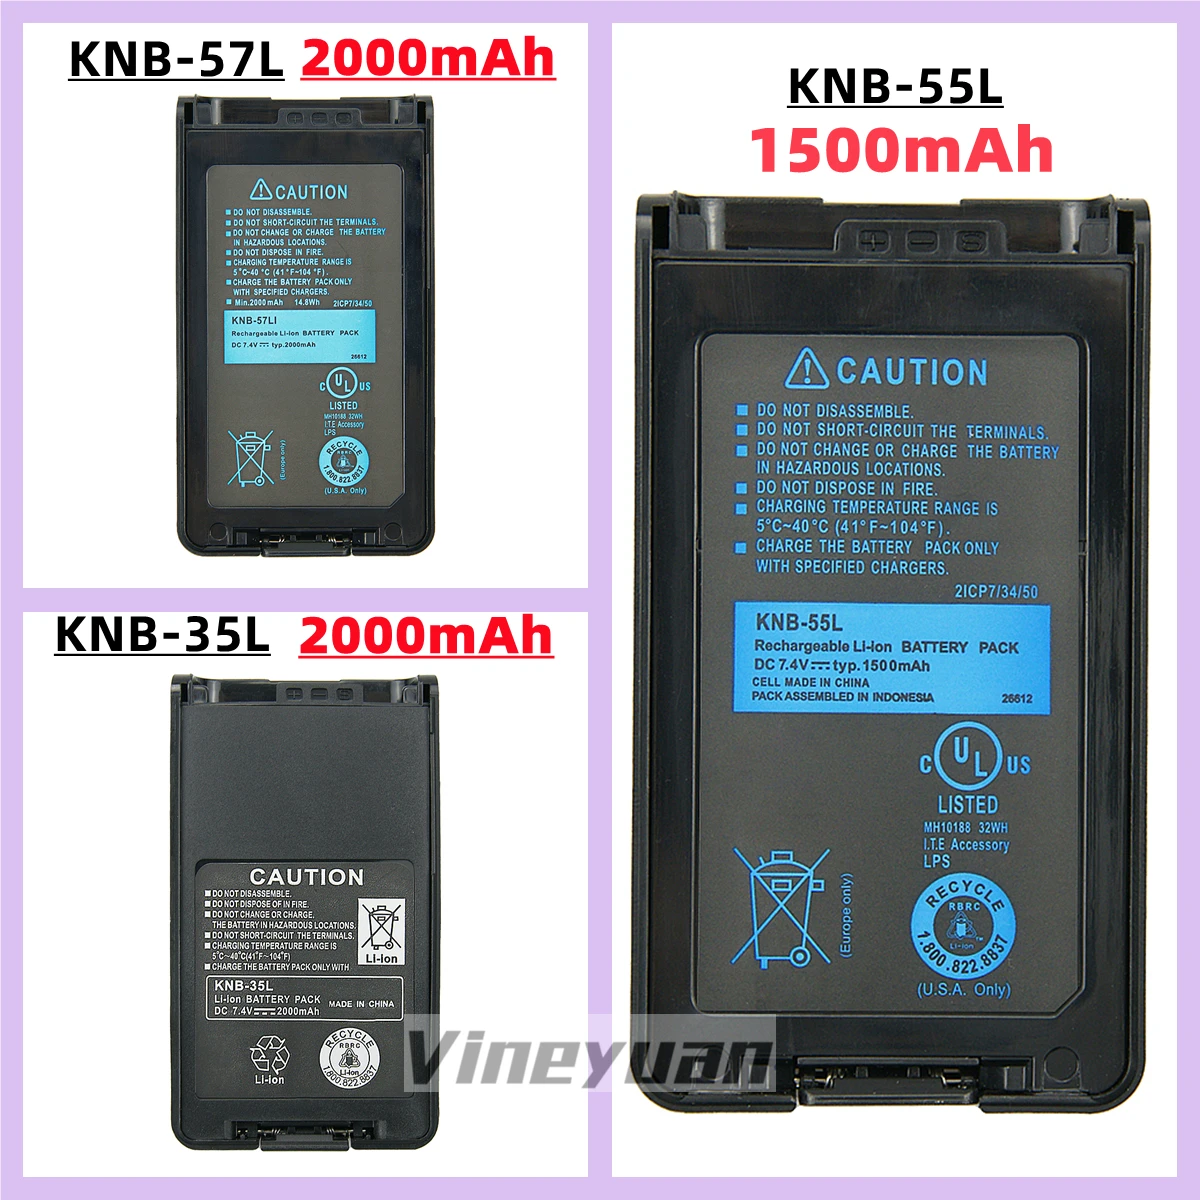 KNB-55L1500mAh Battery Replacement for Kenwood TK-3360, TK-3160, TK-2170, TK-3173, TK-3170, TK-2360, NX-320, TK-3140, TK-2160